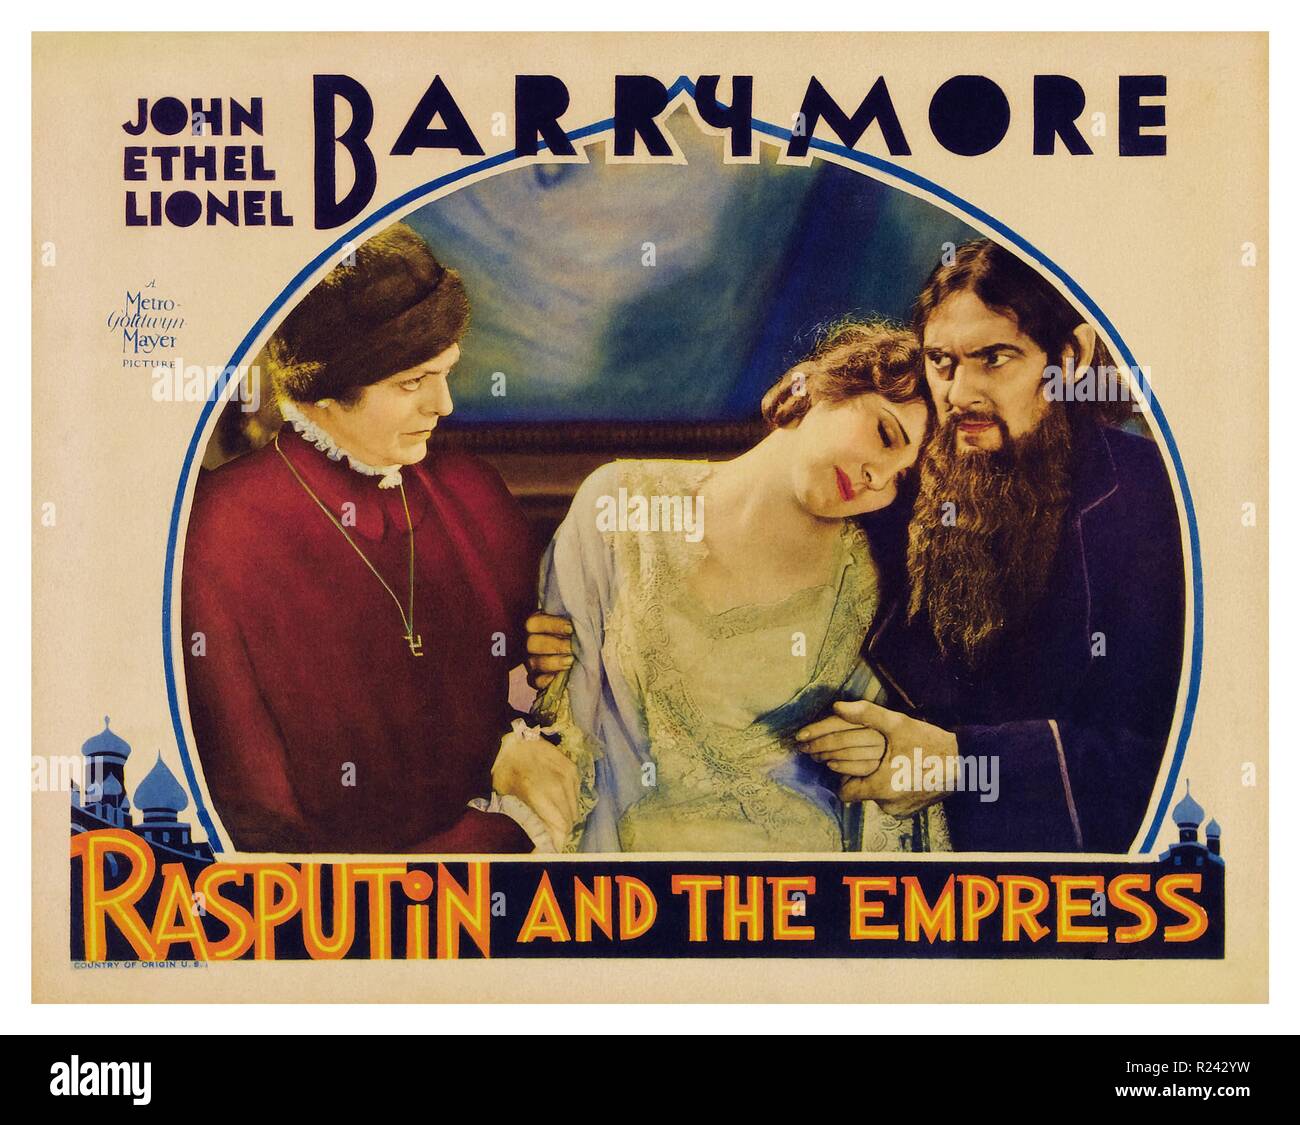 Rasputin e l'Imperatrice è una pellicola 1932 circa Russia imperiale con protagonista il Barrymore fratelli (Giovanni, come principe Chegodieff; Ethel, come Czarina Alexandra; e Lionel Barrymore, come Grigori Rasputin). È il solo film in cui tutti i tre fratelli appaiono insieme Foto Stock